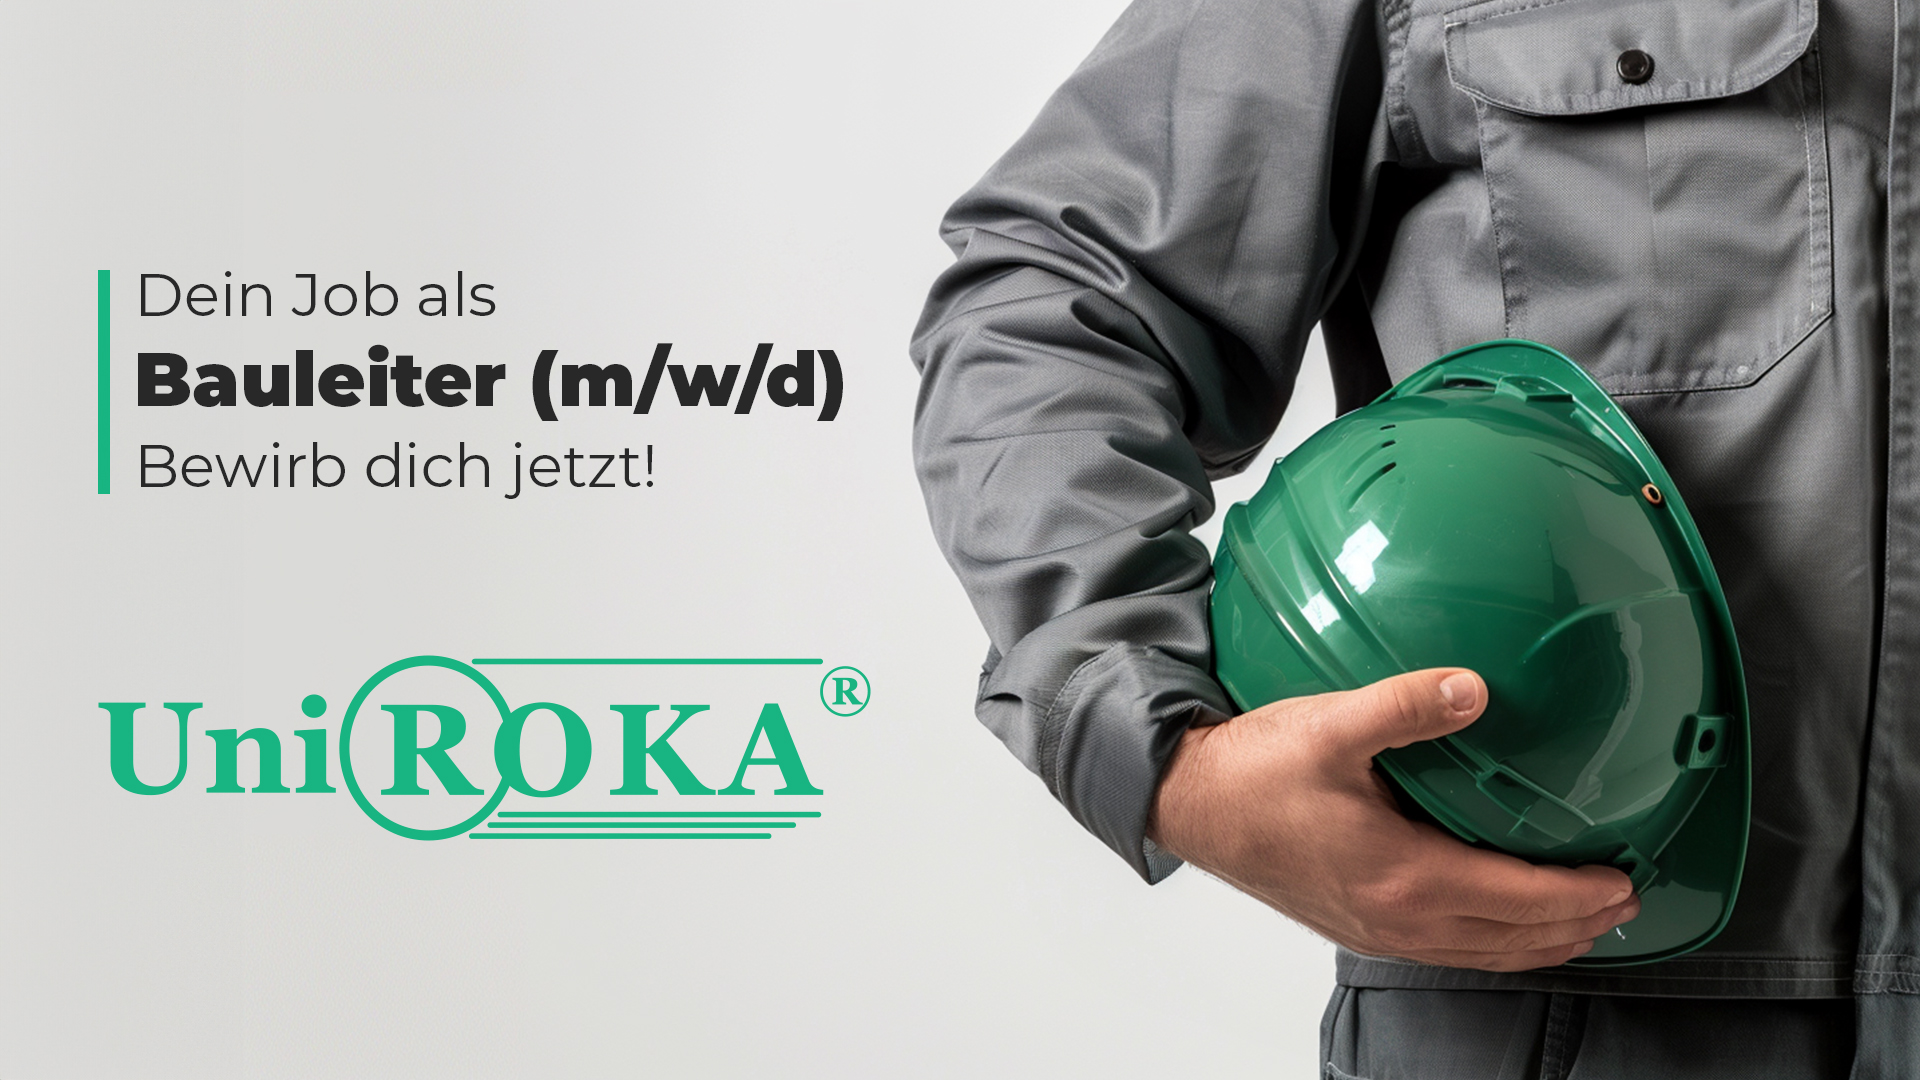 Zu sehen ist eine Werbegrafik für eine Stellenanzeige als Bauleiter in Rostock und Umgebung, Dein Job als Bauleiter bei Uni Roka Rostock